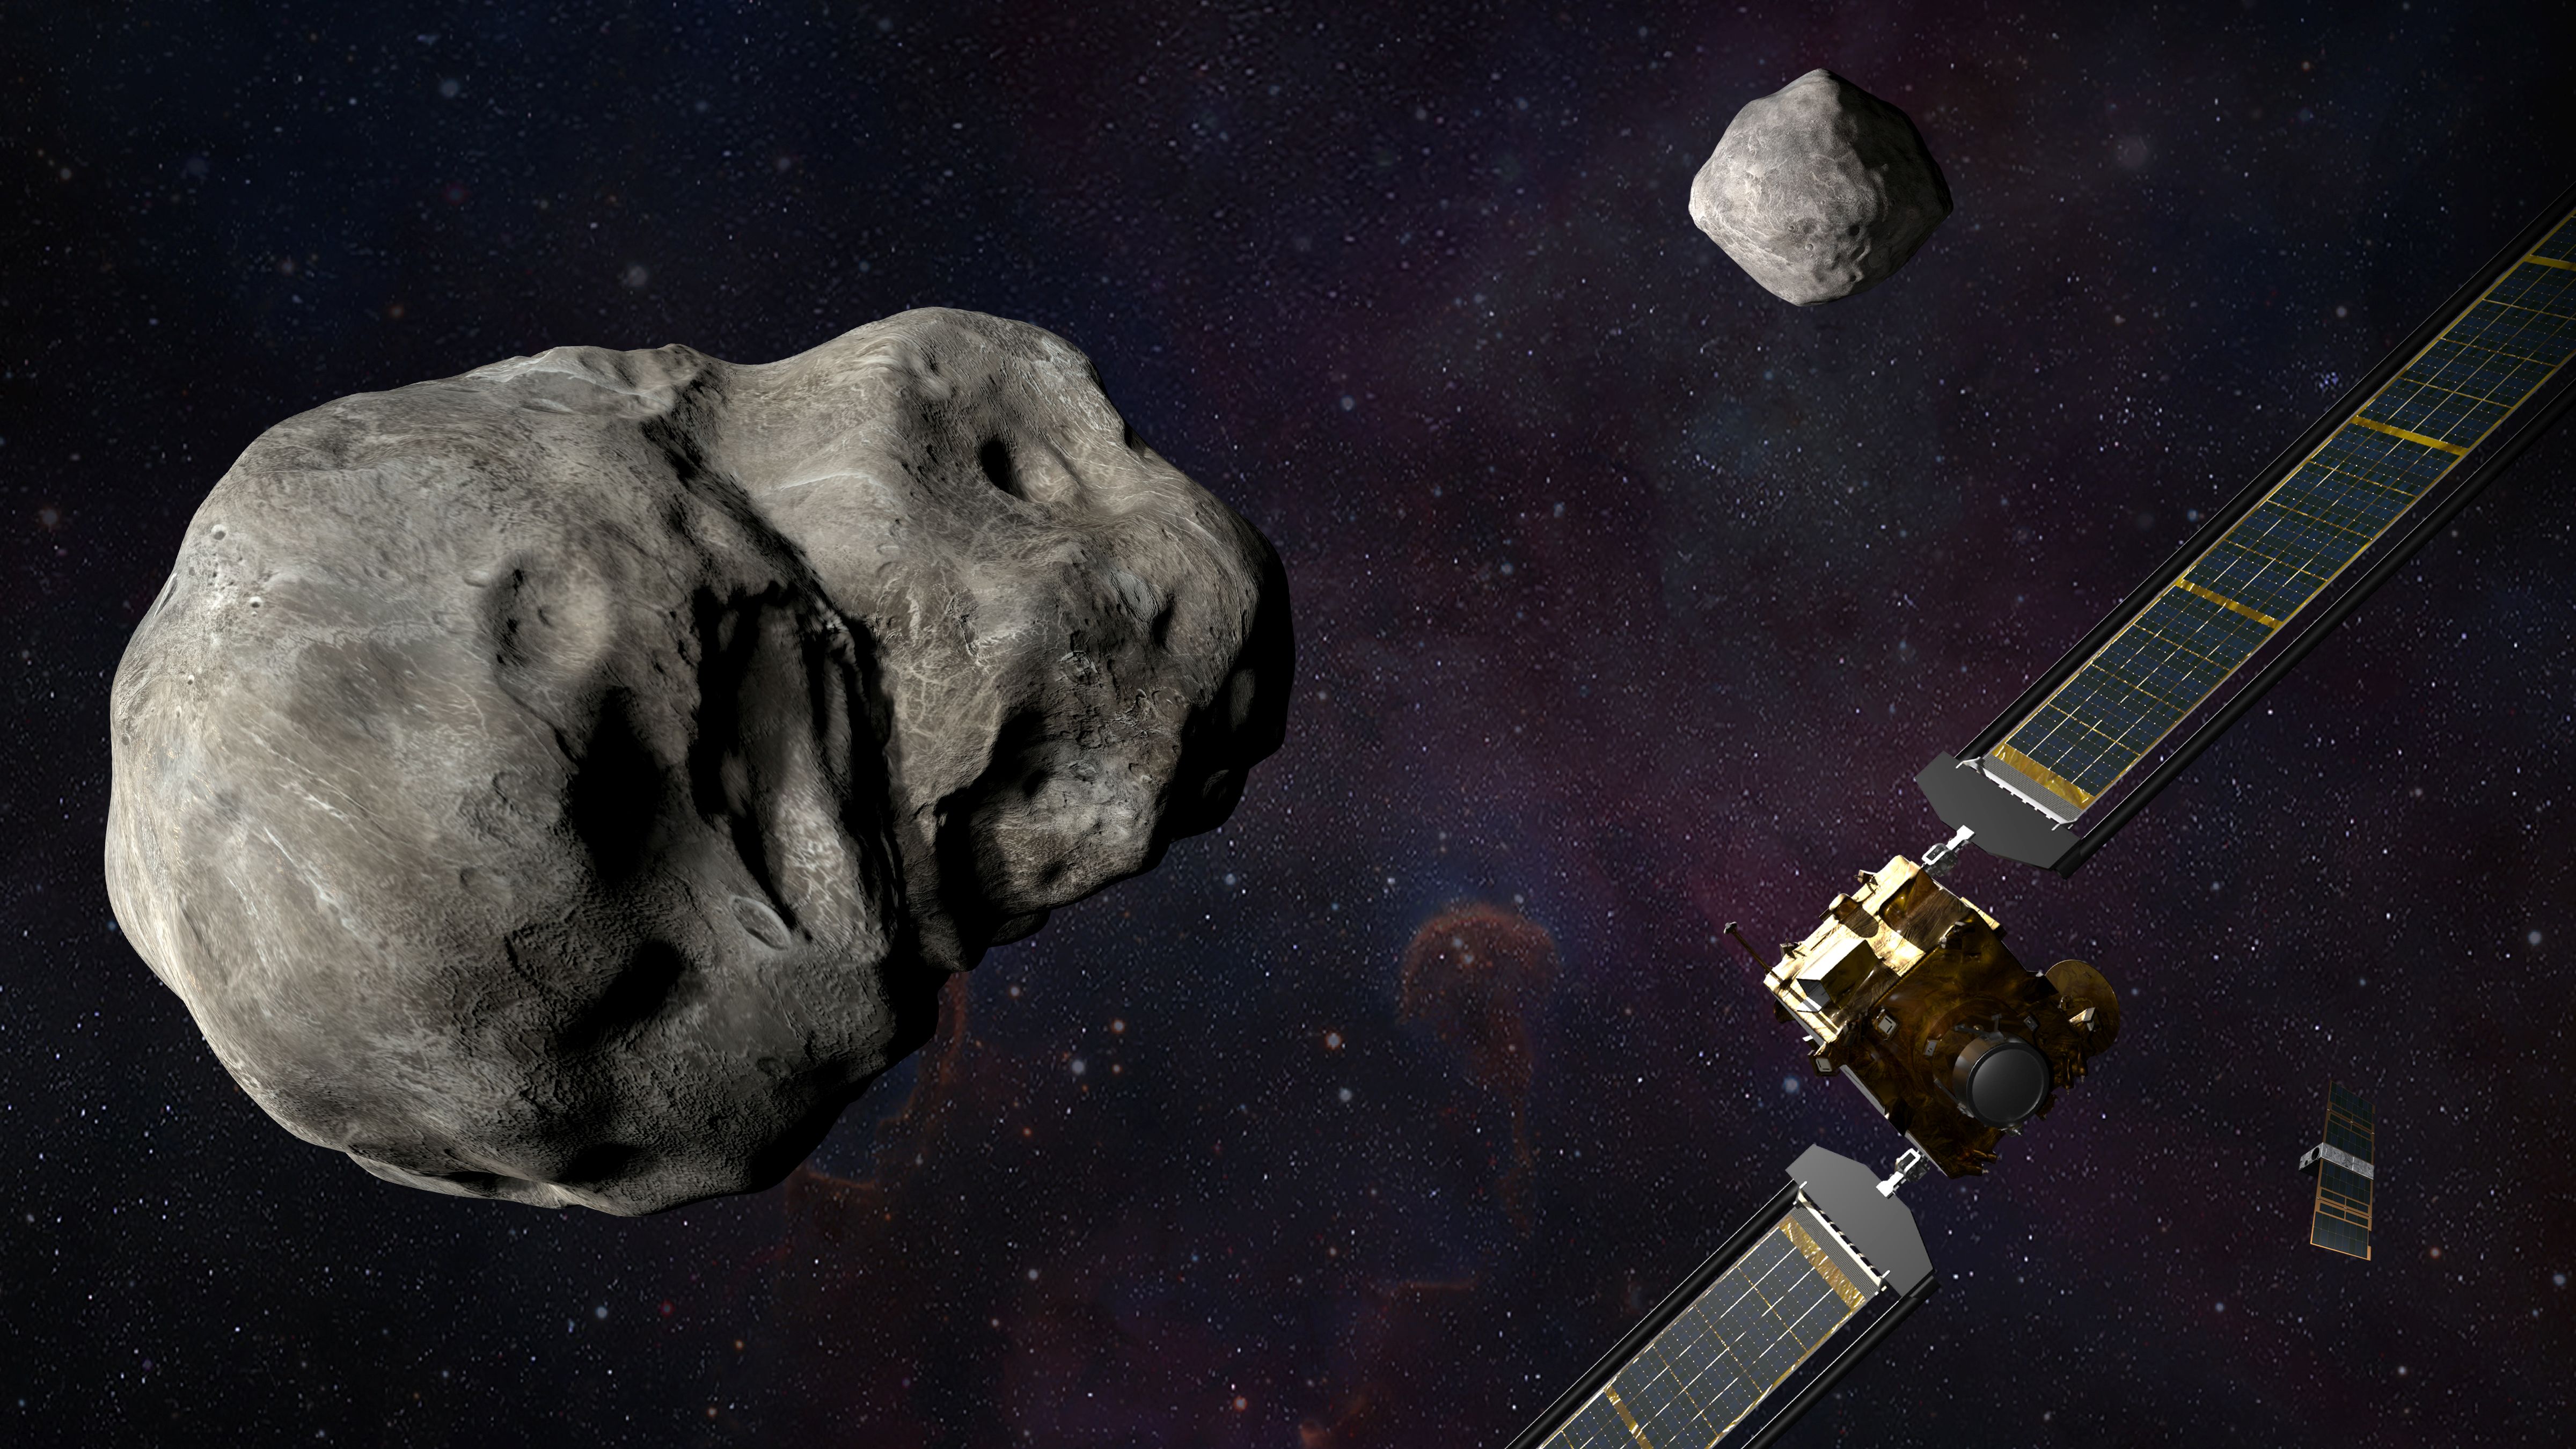 DARTミッション。小惑星に探査機を衝突させ、軌道の変化をしらべる。